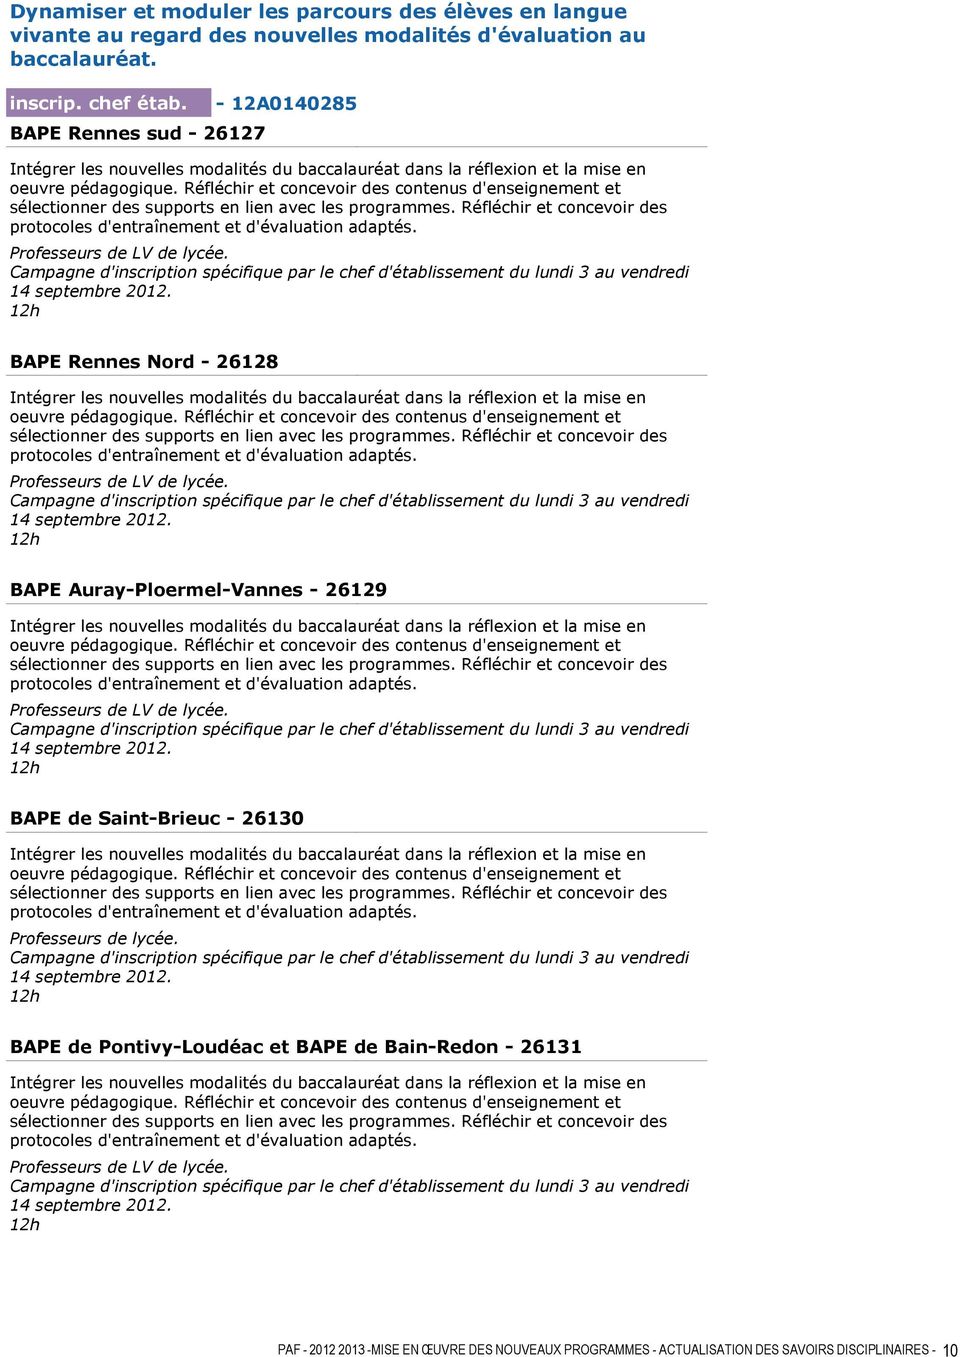 BAPE Auray-Ploermel-Vannes - 26129 78 Professeurs de LV de lycée. BAPE de Saint-Brieuc - 26130 79 Professeurs de lycée.